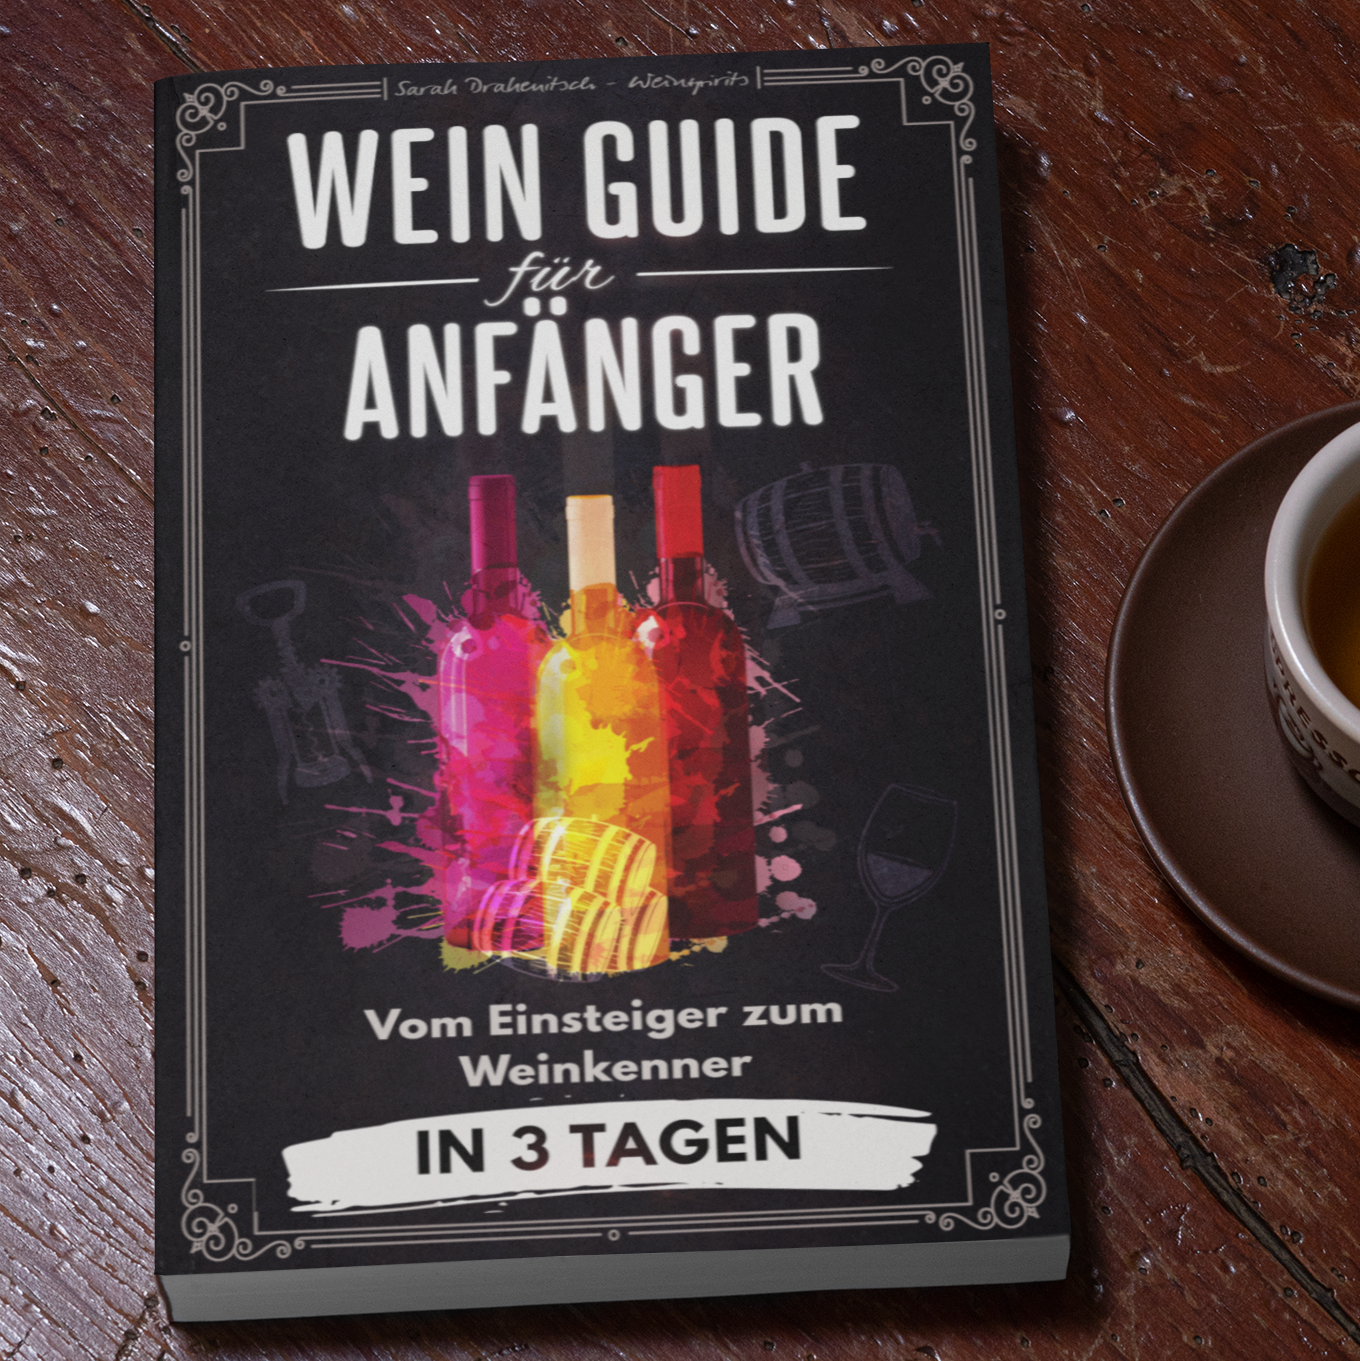 Wein Guide für Anfänger - Buch - Weinspirits